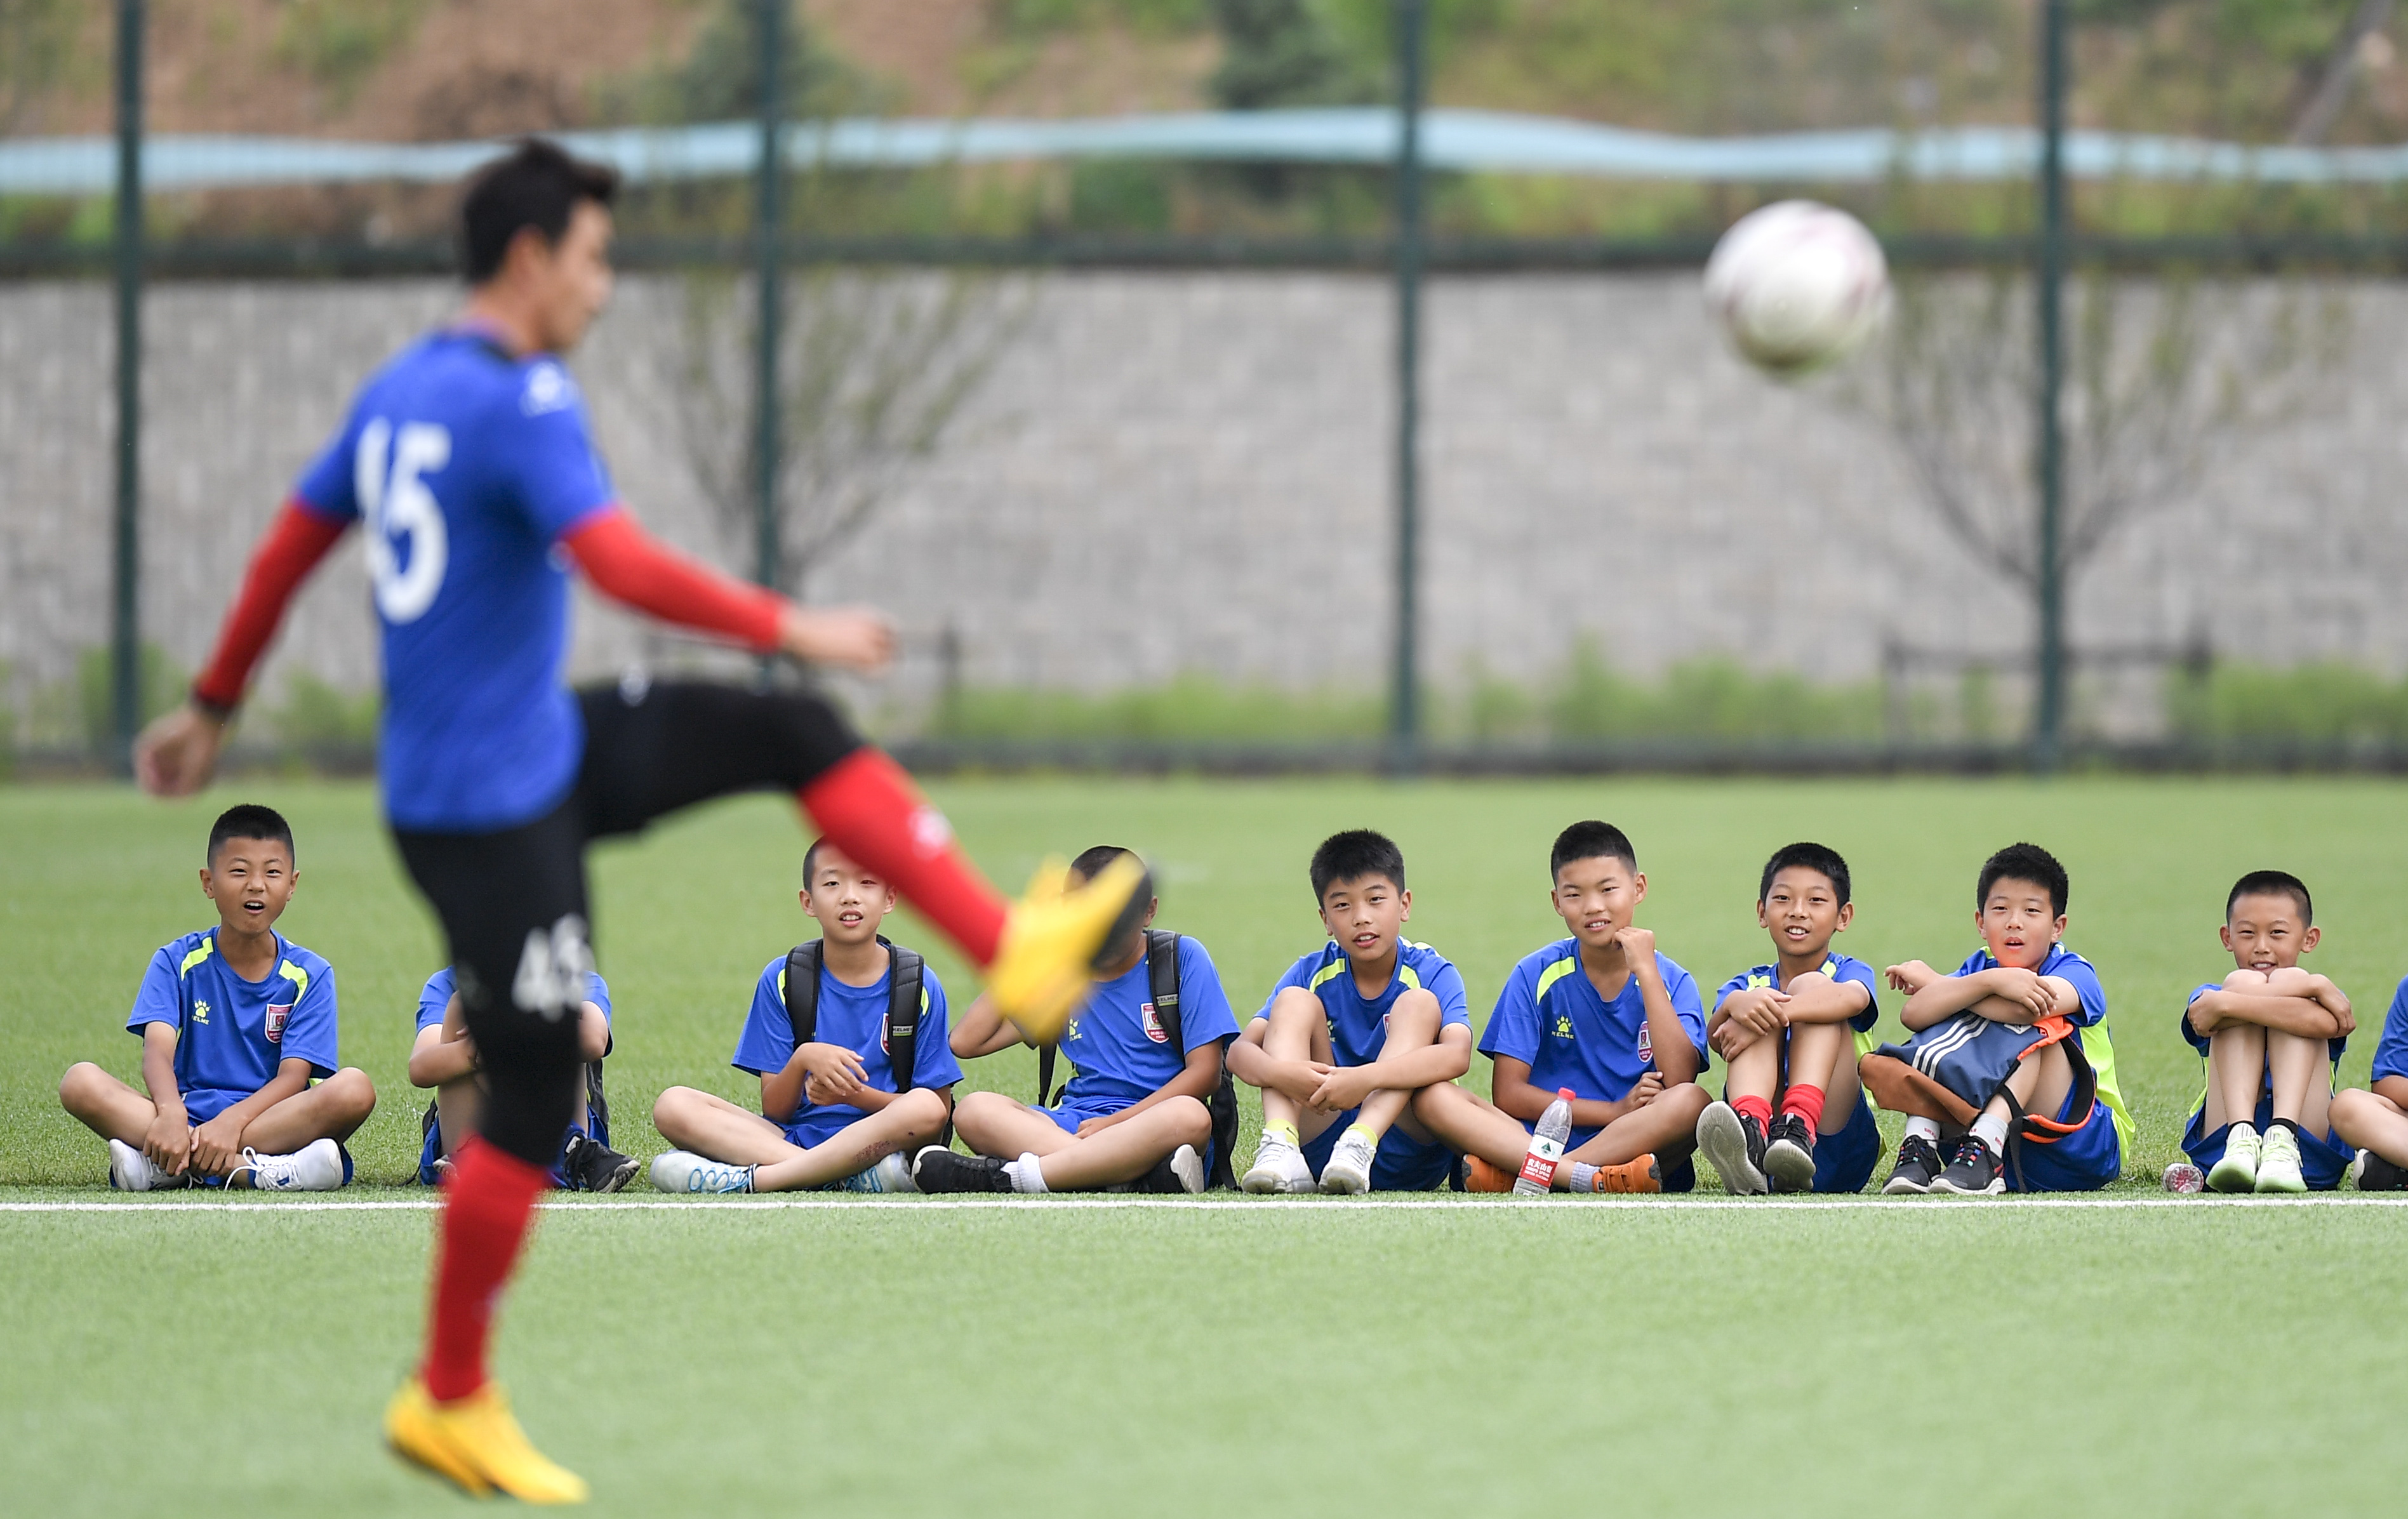 广东5300余家足球培训企业成立2021年新增200余家企业